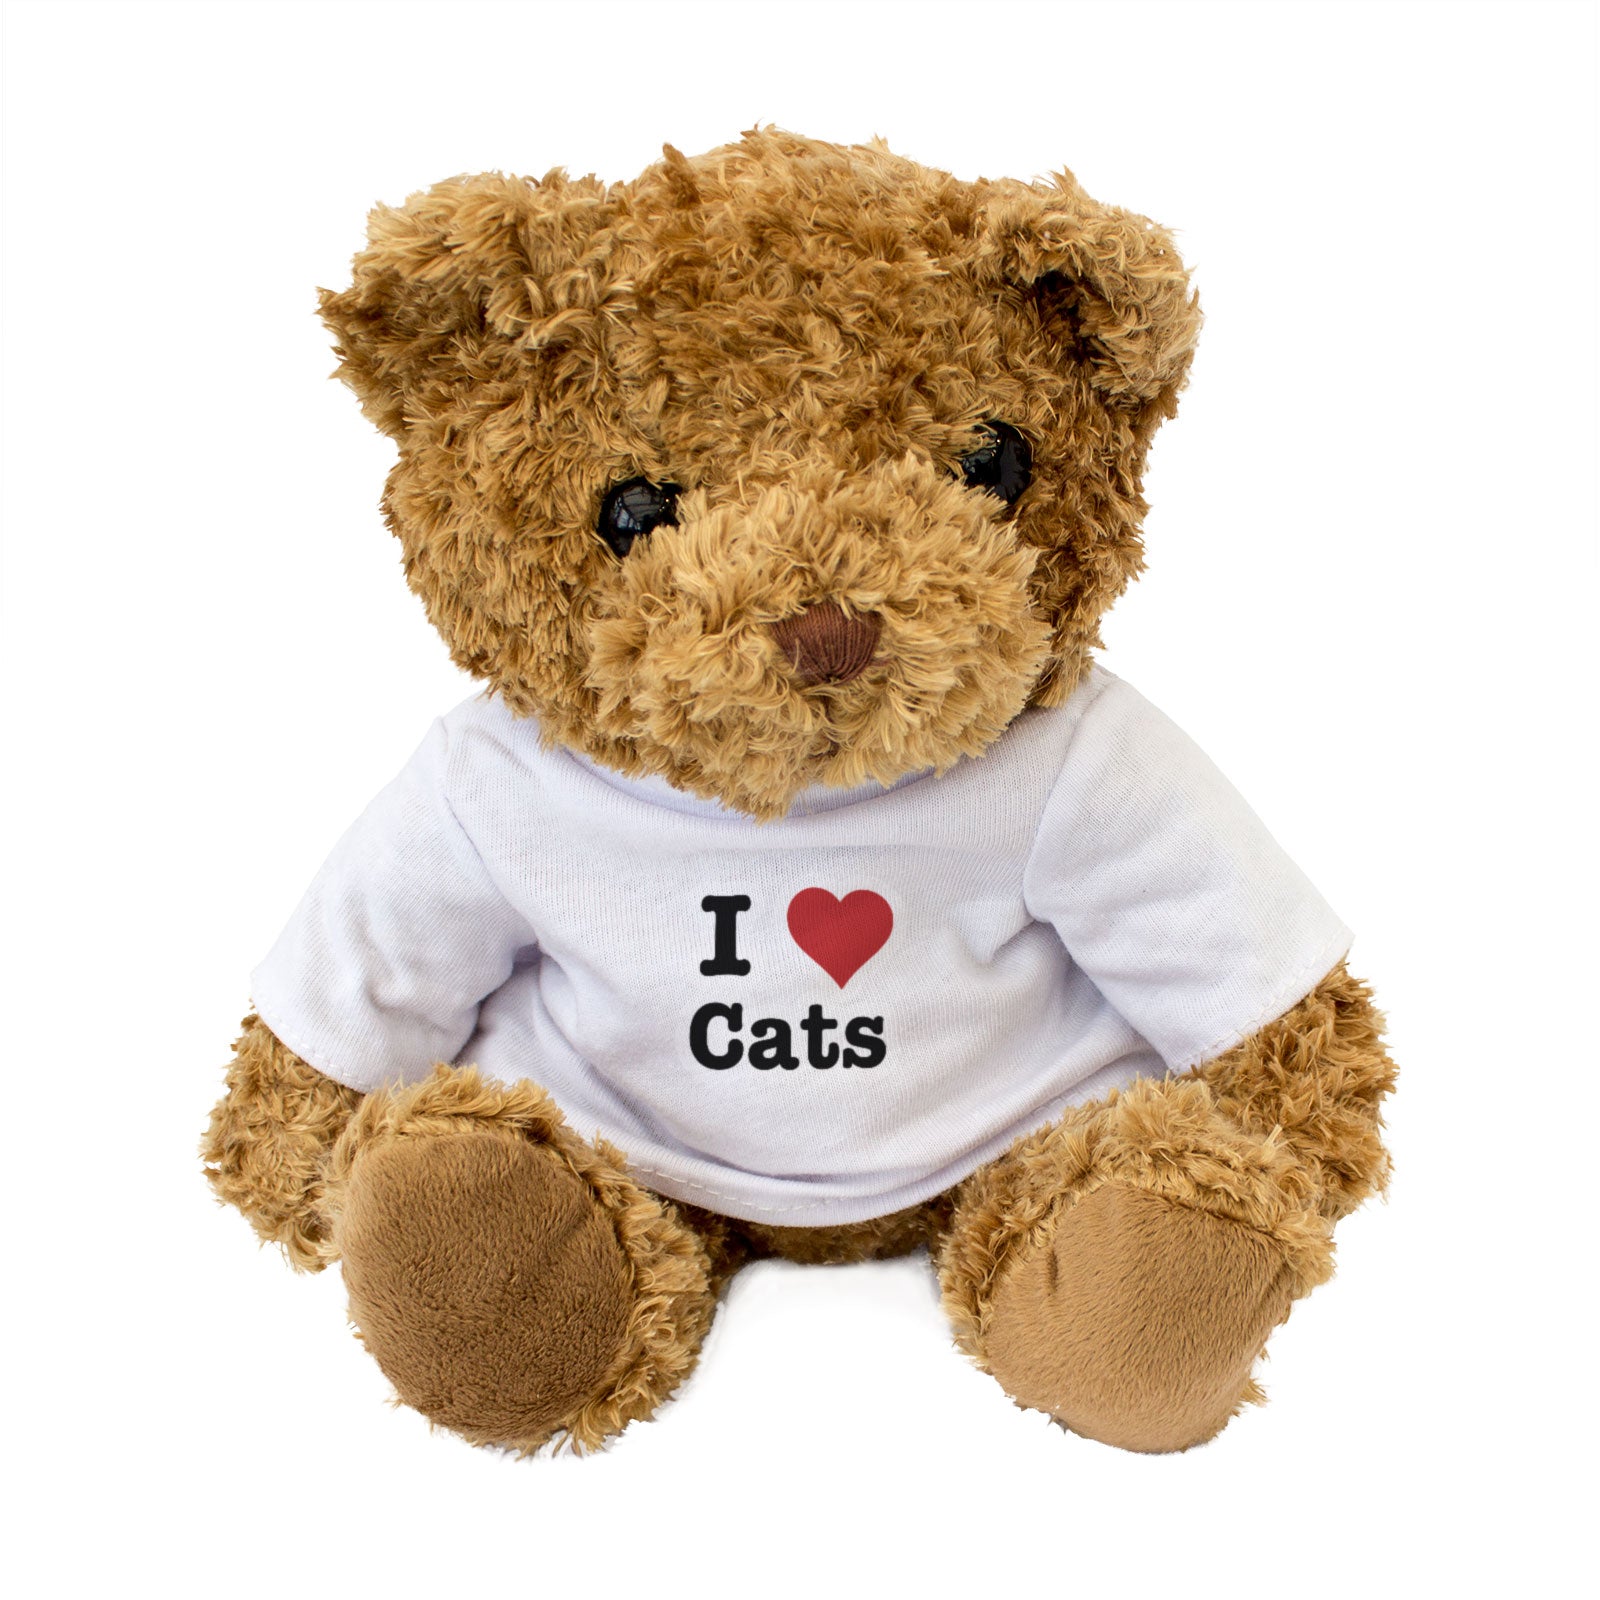 I Heart Cats Teddy Bear